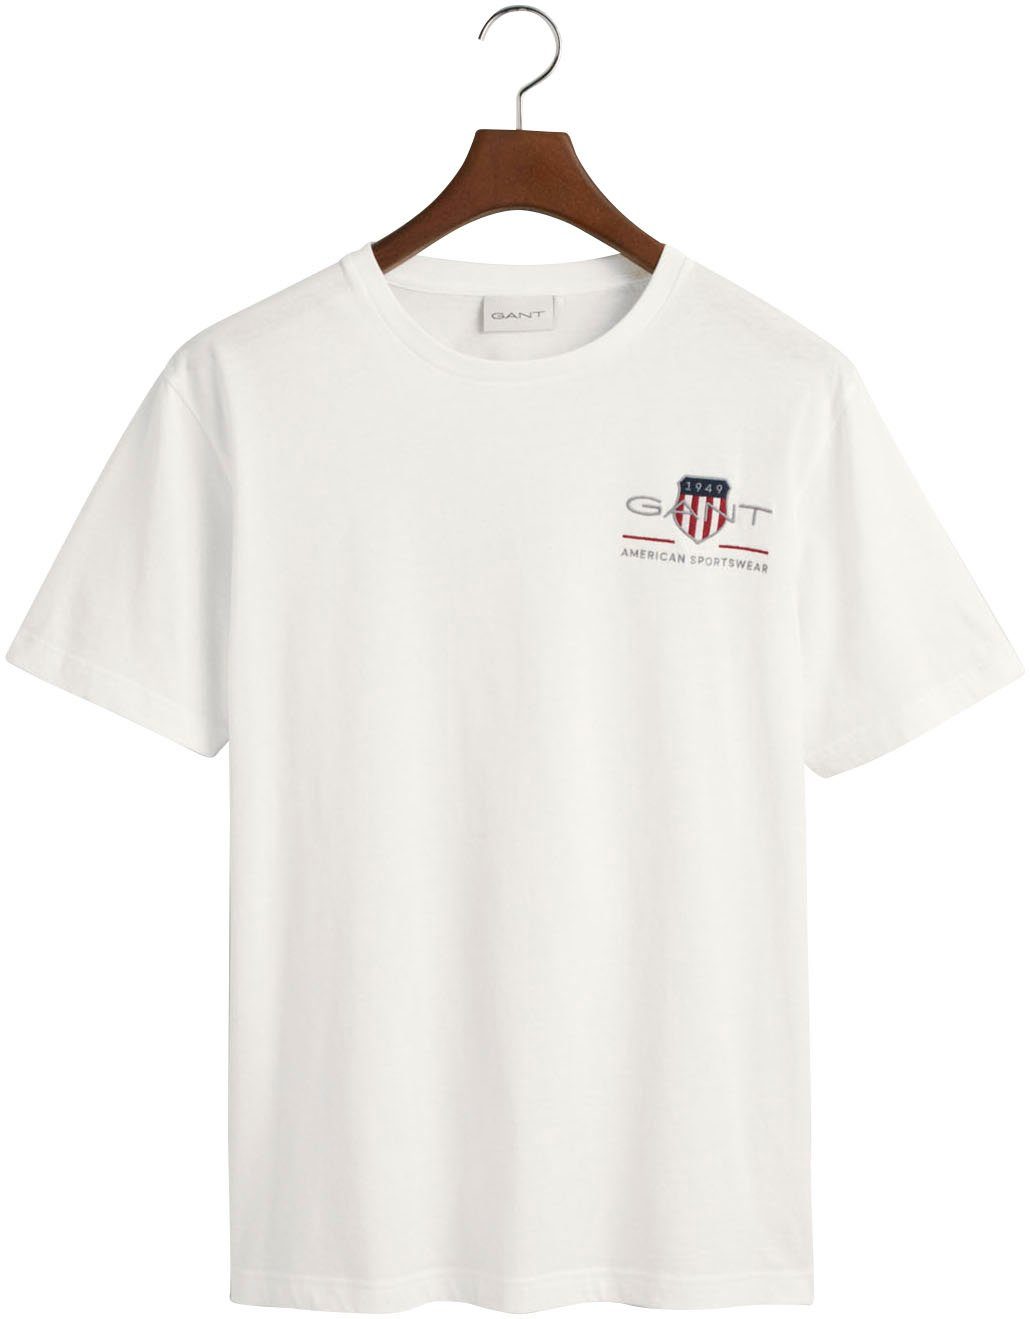 Archiv von inspiriert dem aus SS white SHIELD REG 1980er-Jahren den Gant T-Shirt T-SHIRT EMB ARCHIVE